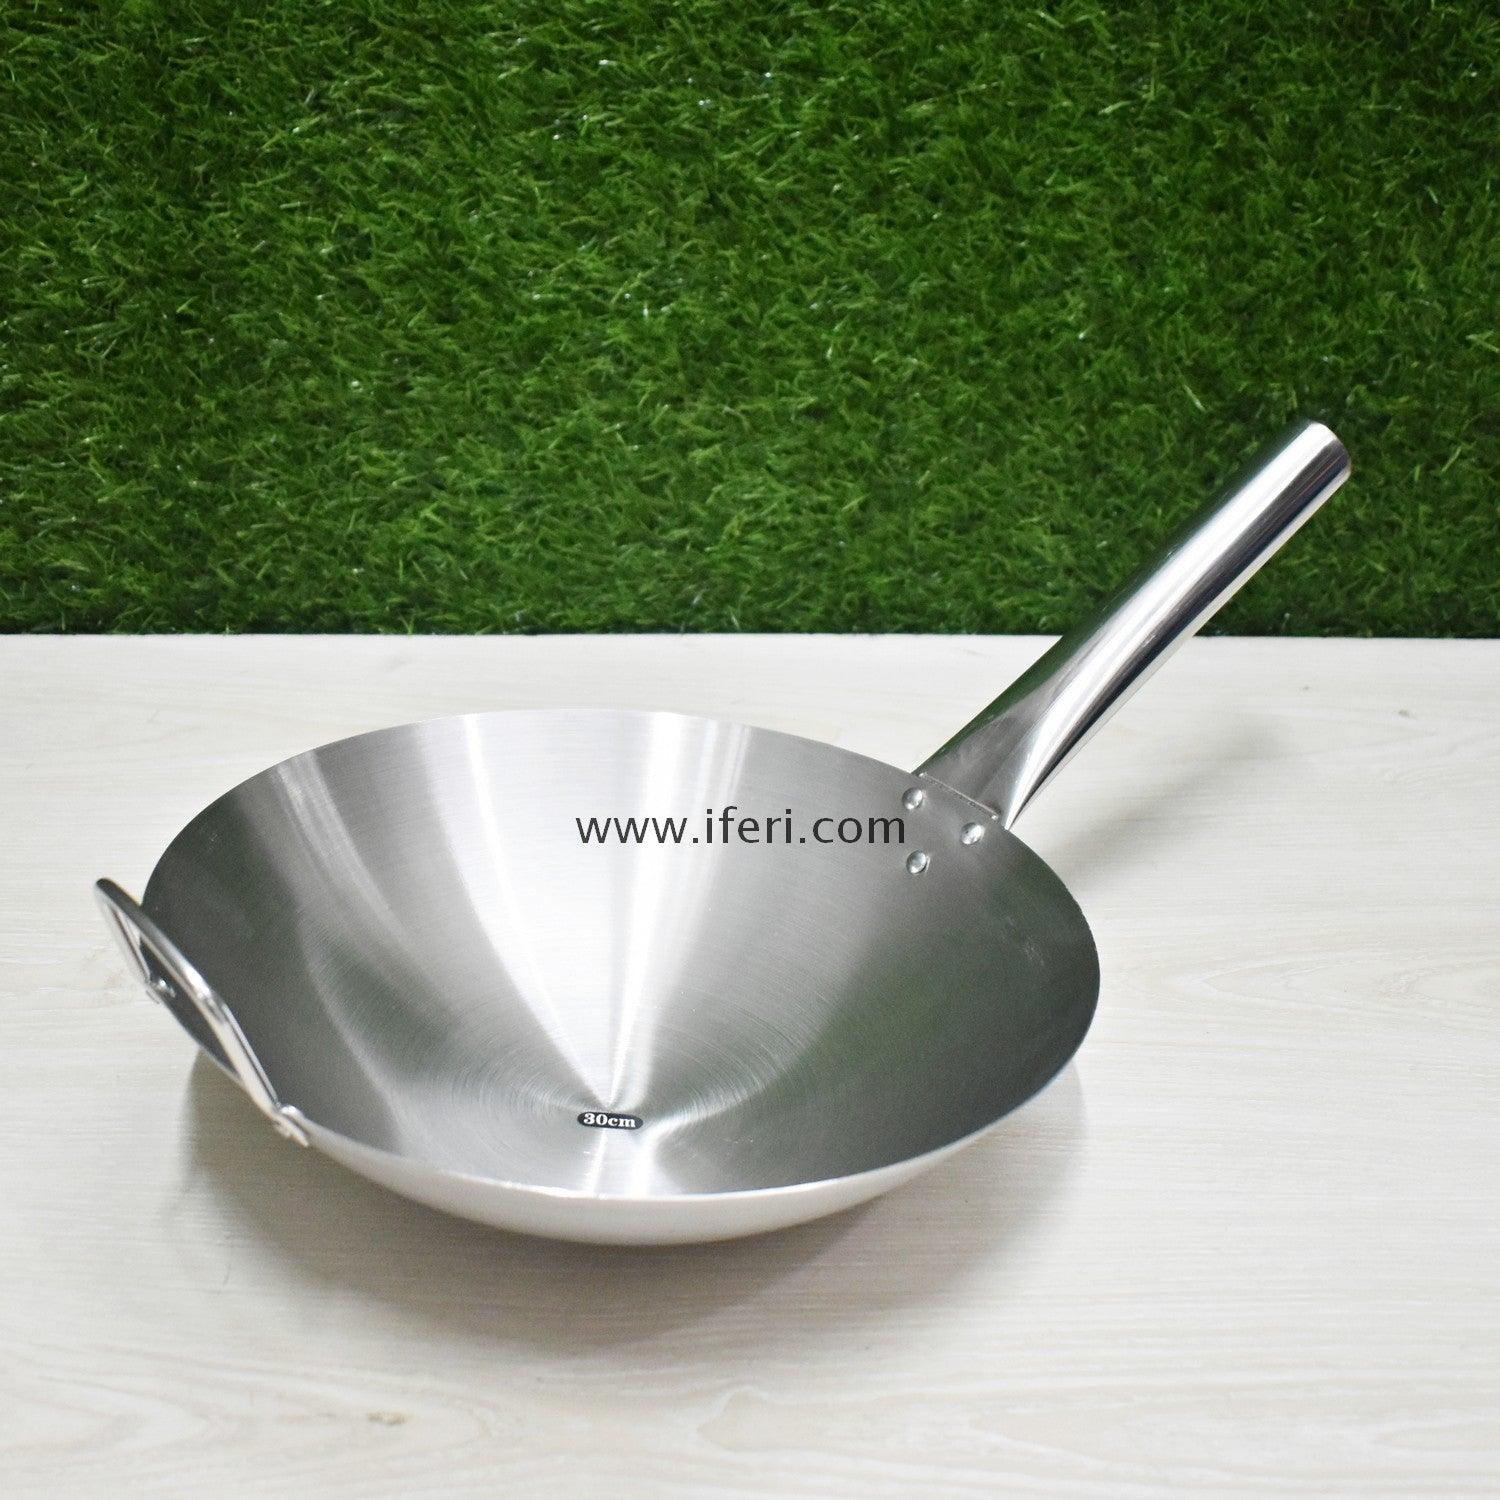 30cm Stainless Steel Cooking Karai TB8465 Price in Bangladesh - iferi.com